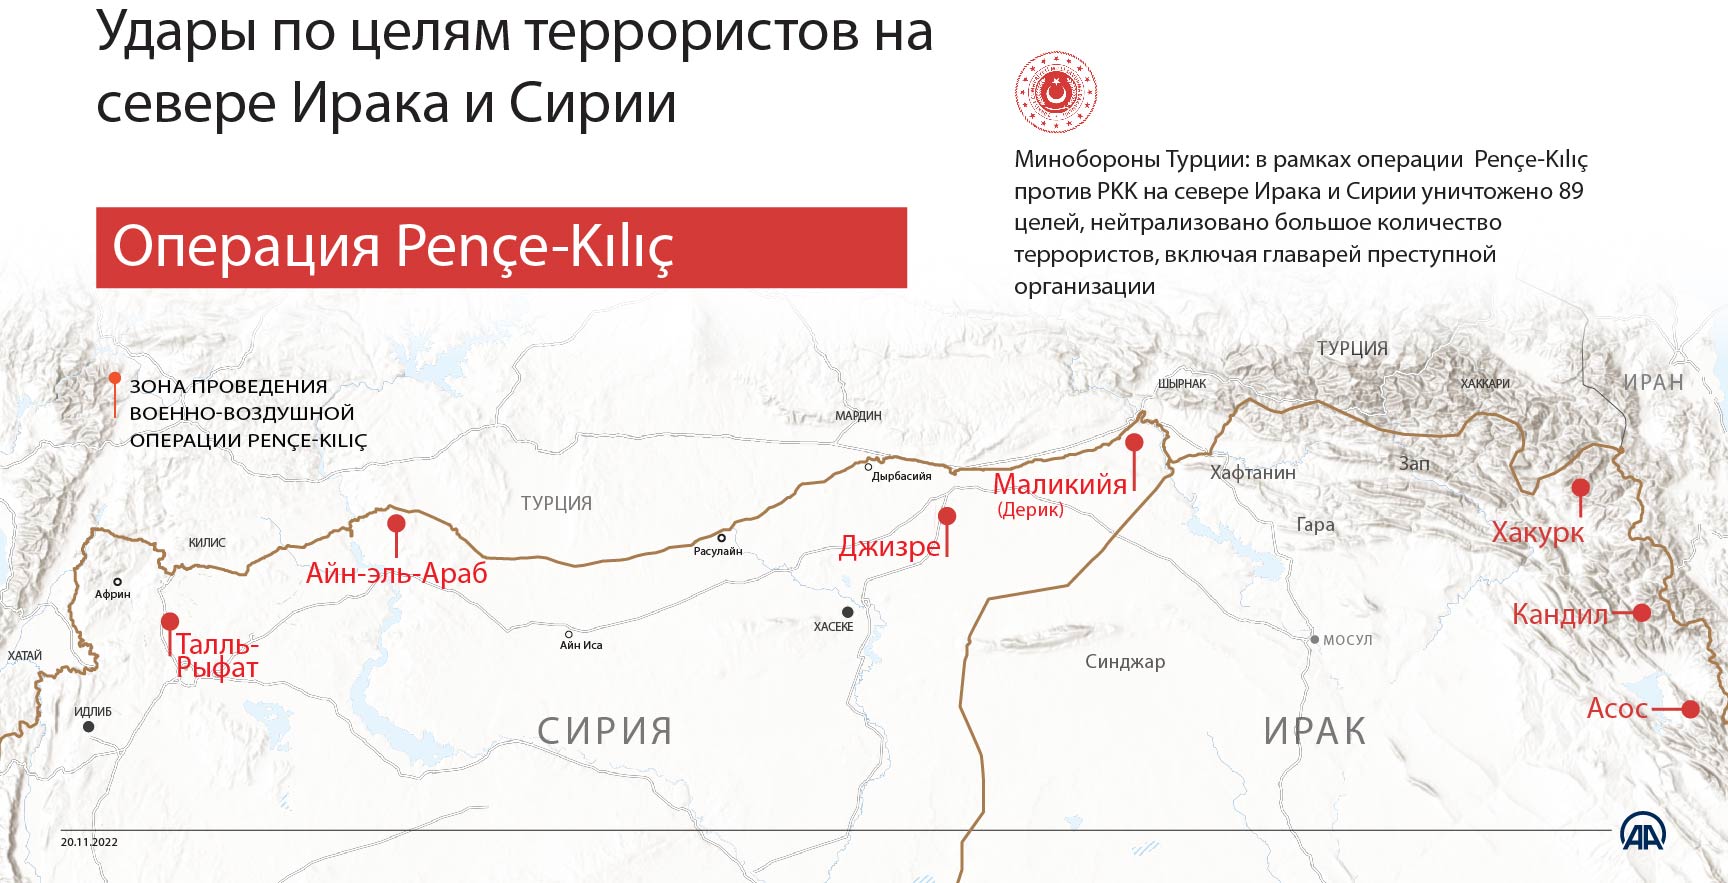 ВВС Турции уничтожили объекты террористов РКК на севере Ирака и Сирии в рамках операции Pençe-Kılıç